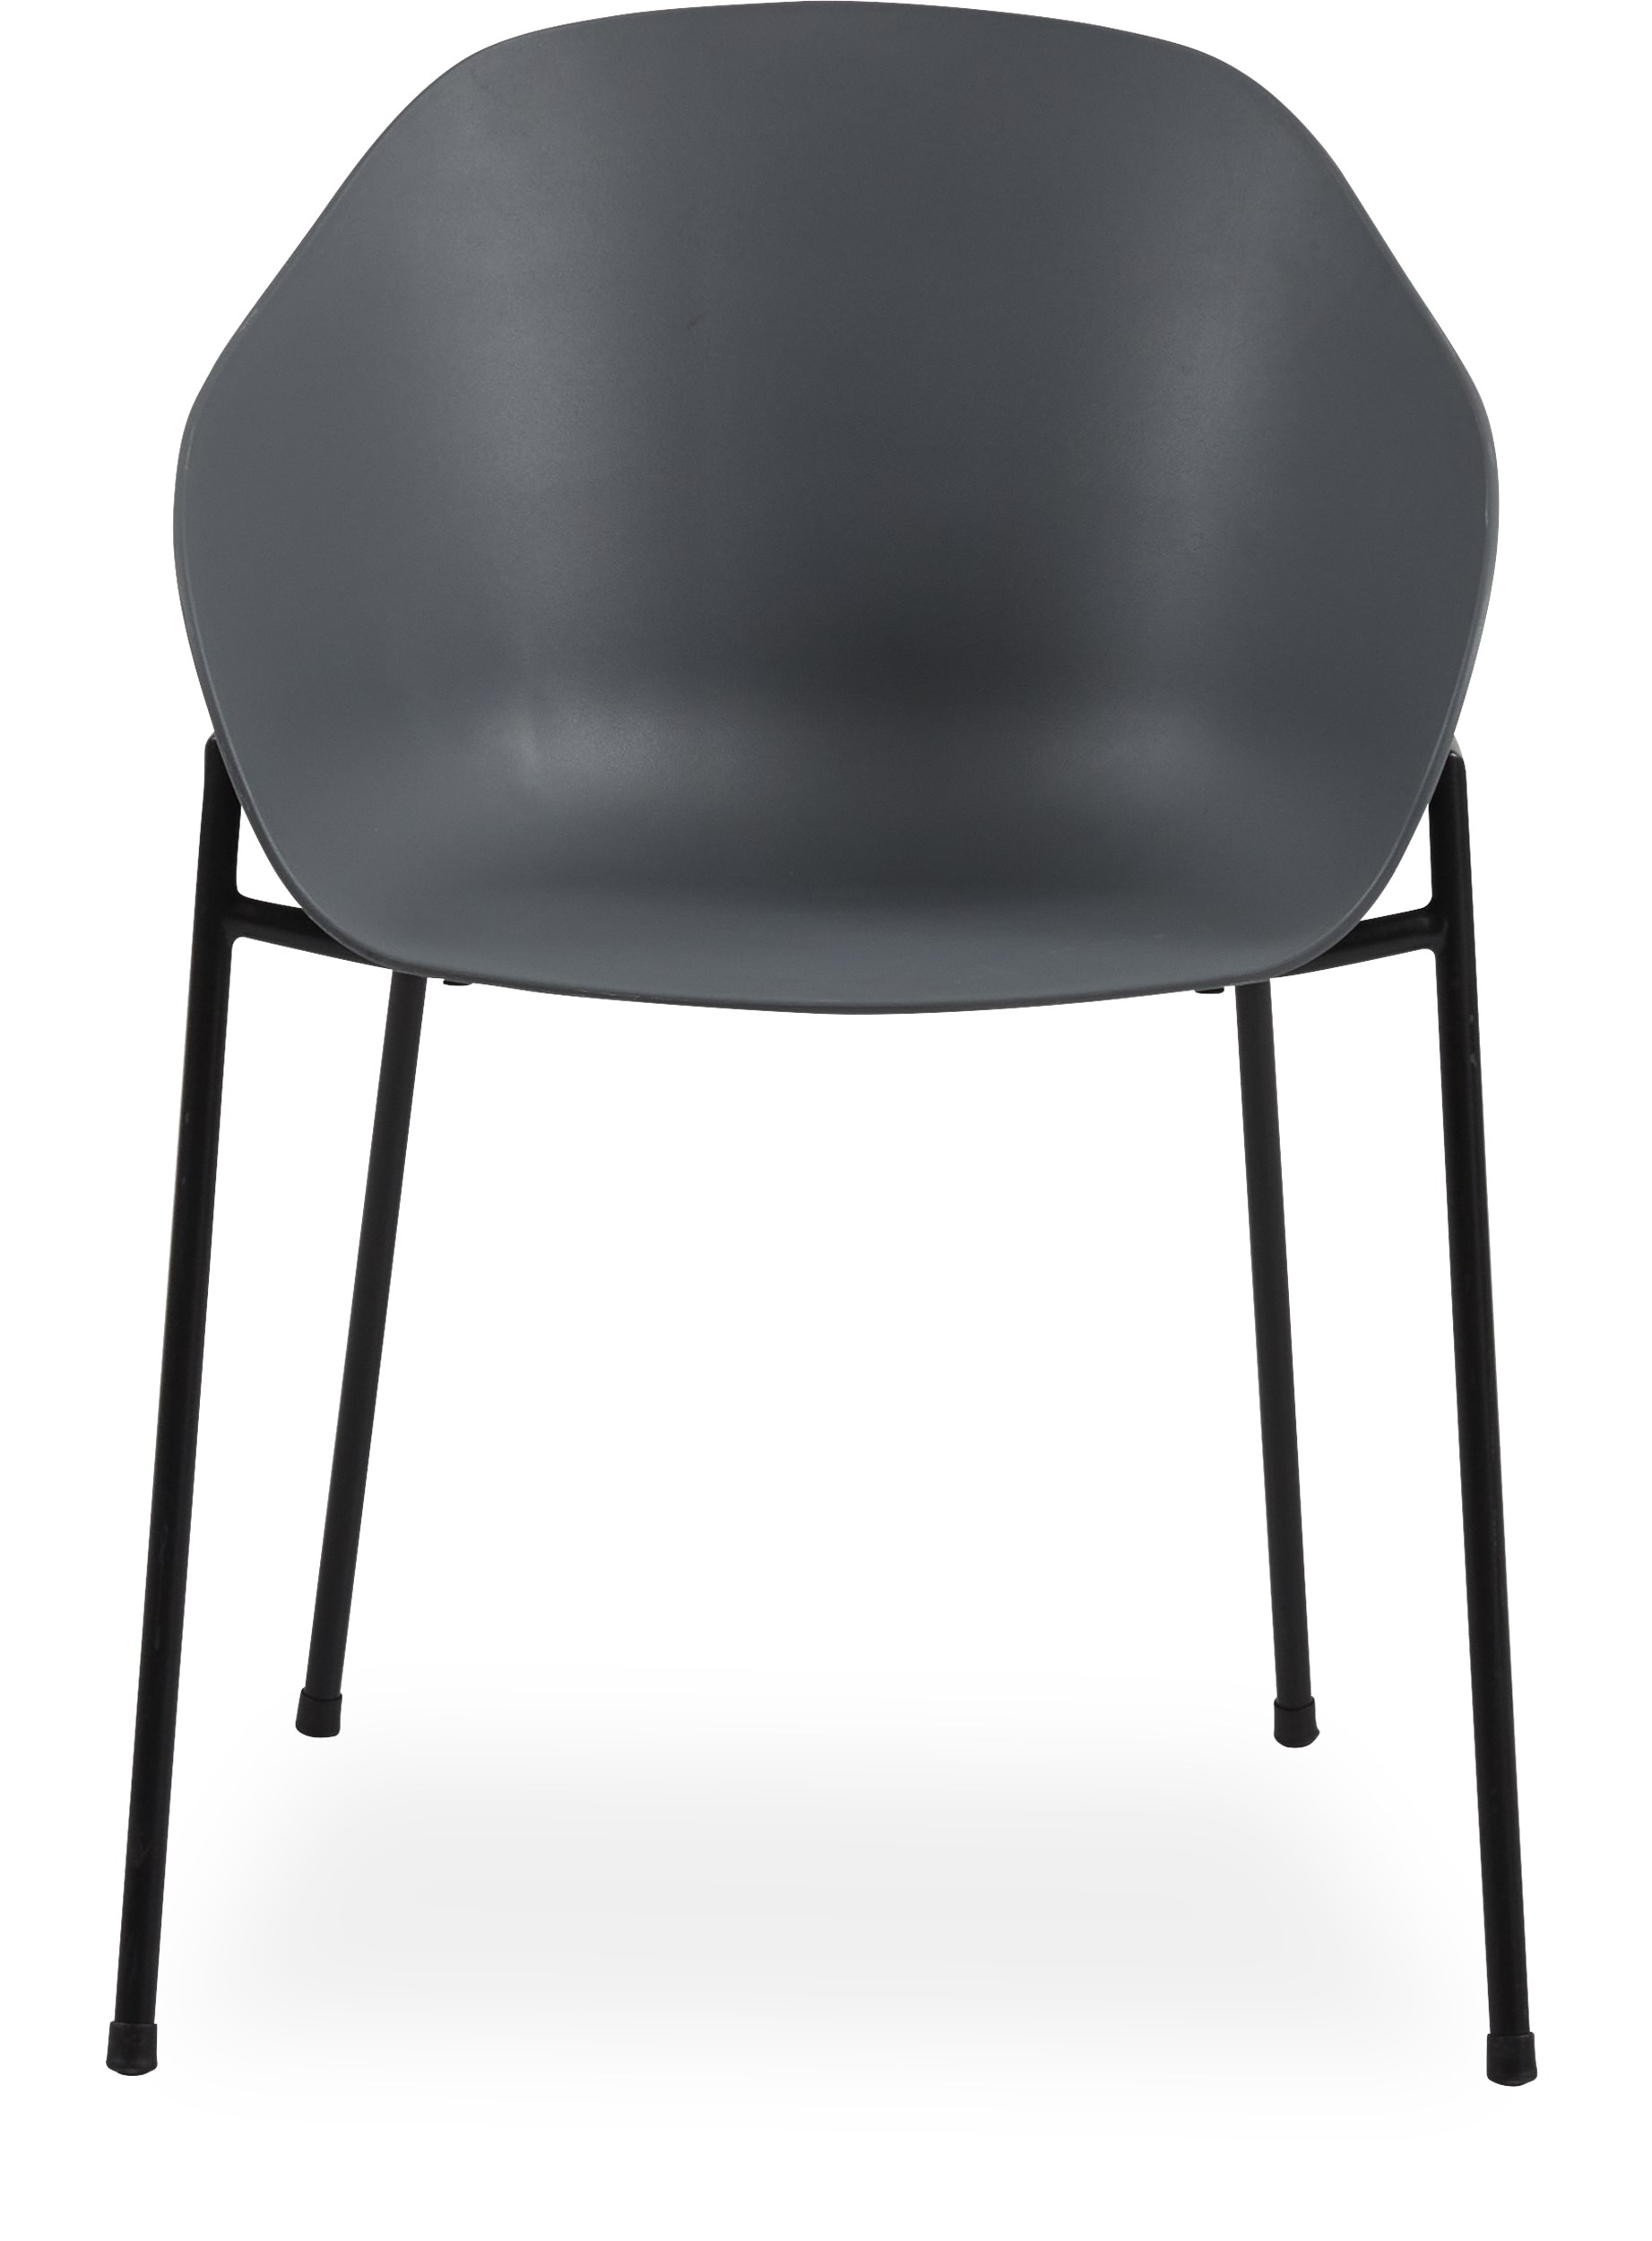 Damio Trädgårdsstol - Skal i grå plast och stomme i svart pulverlackerad metall